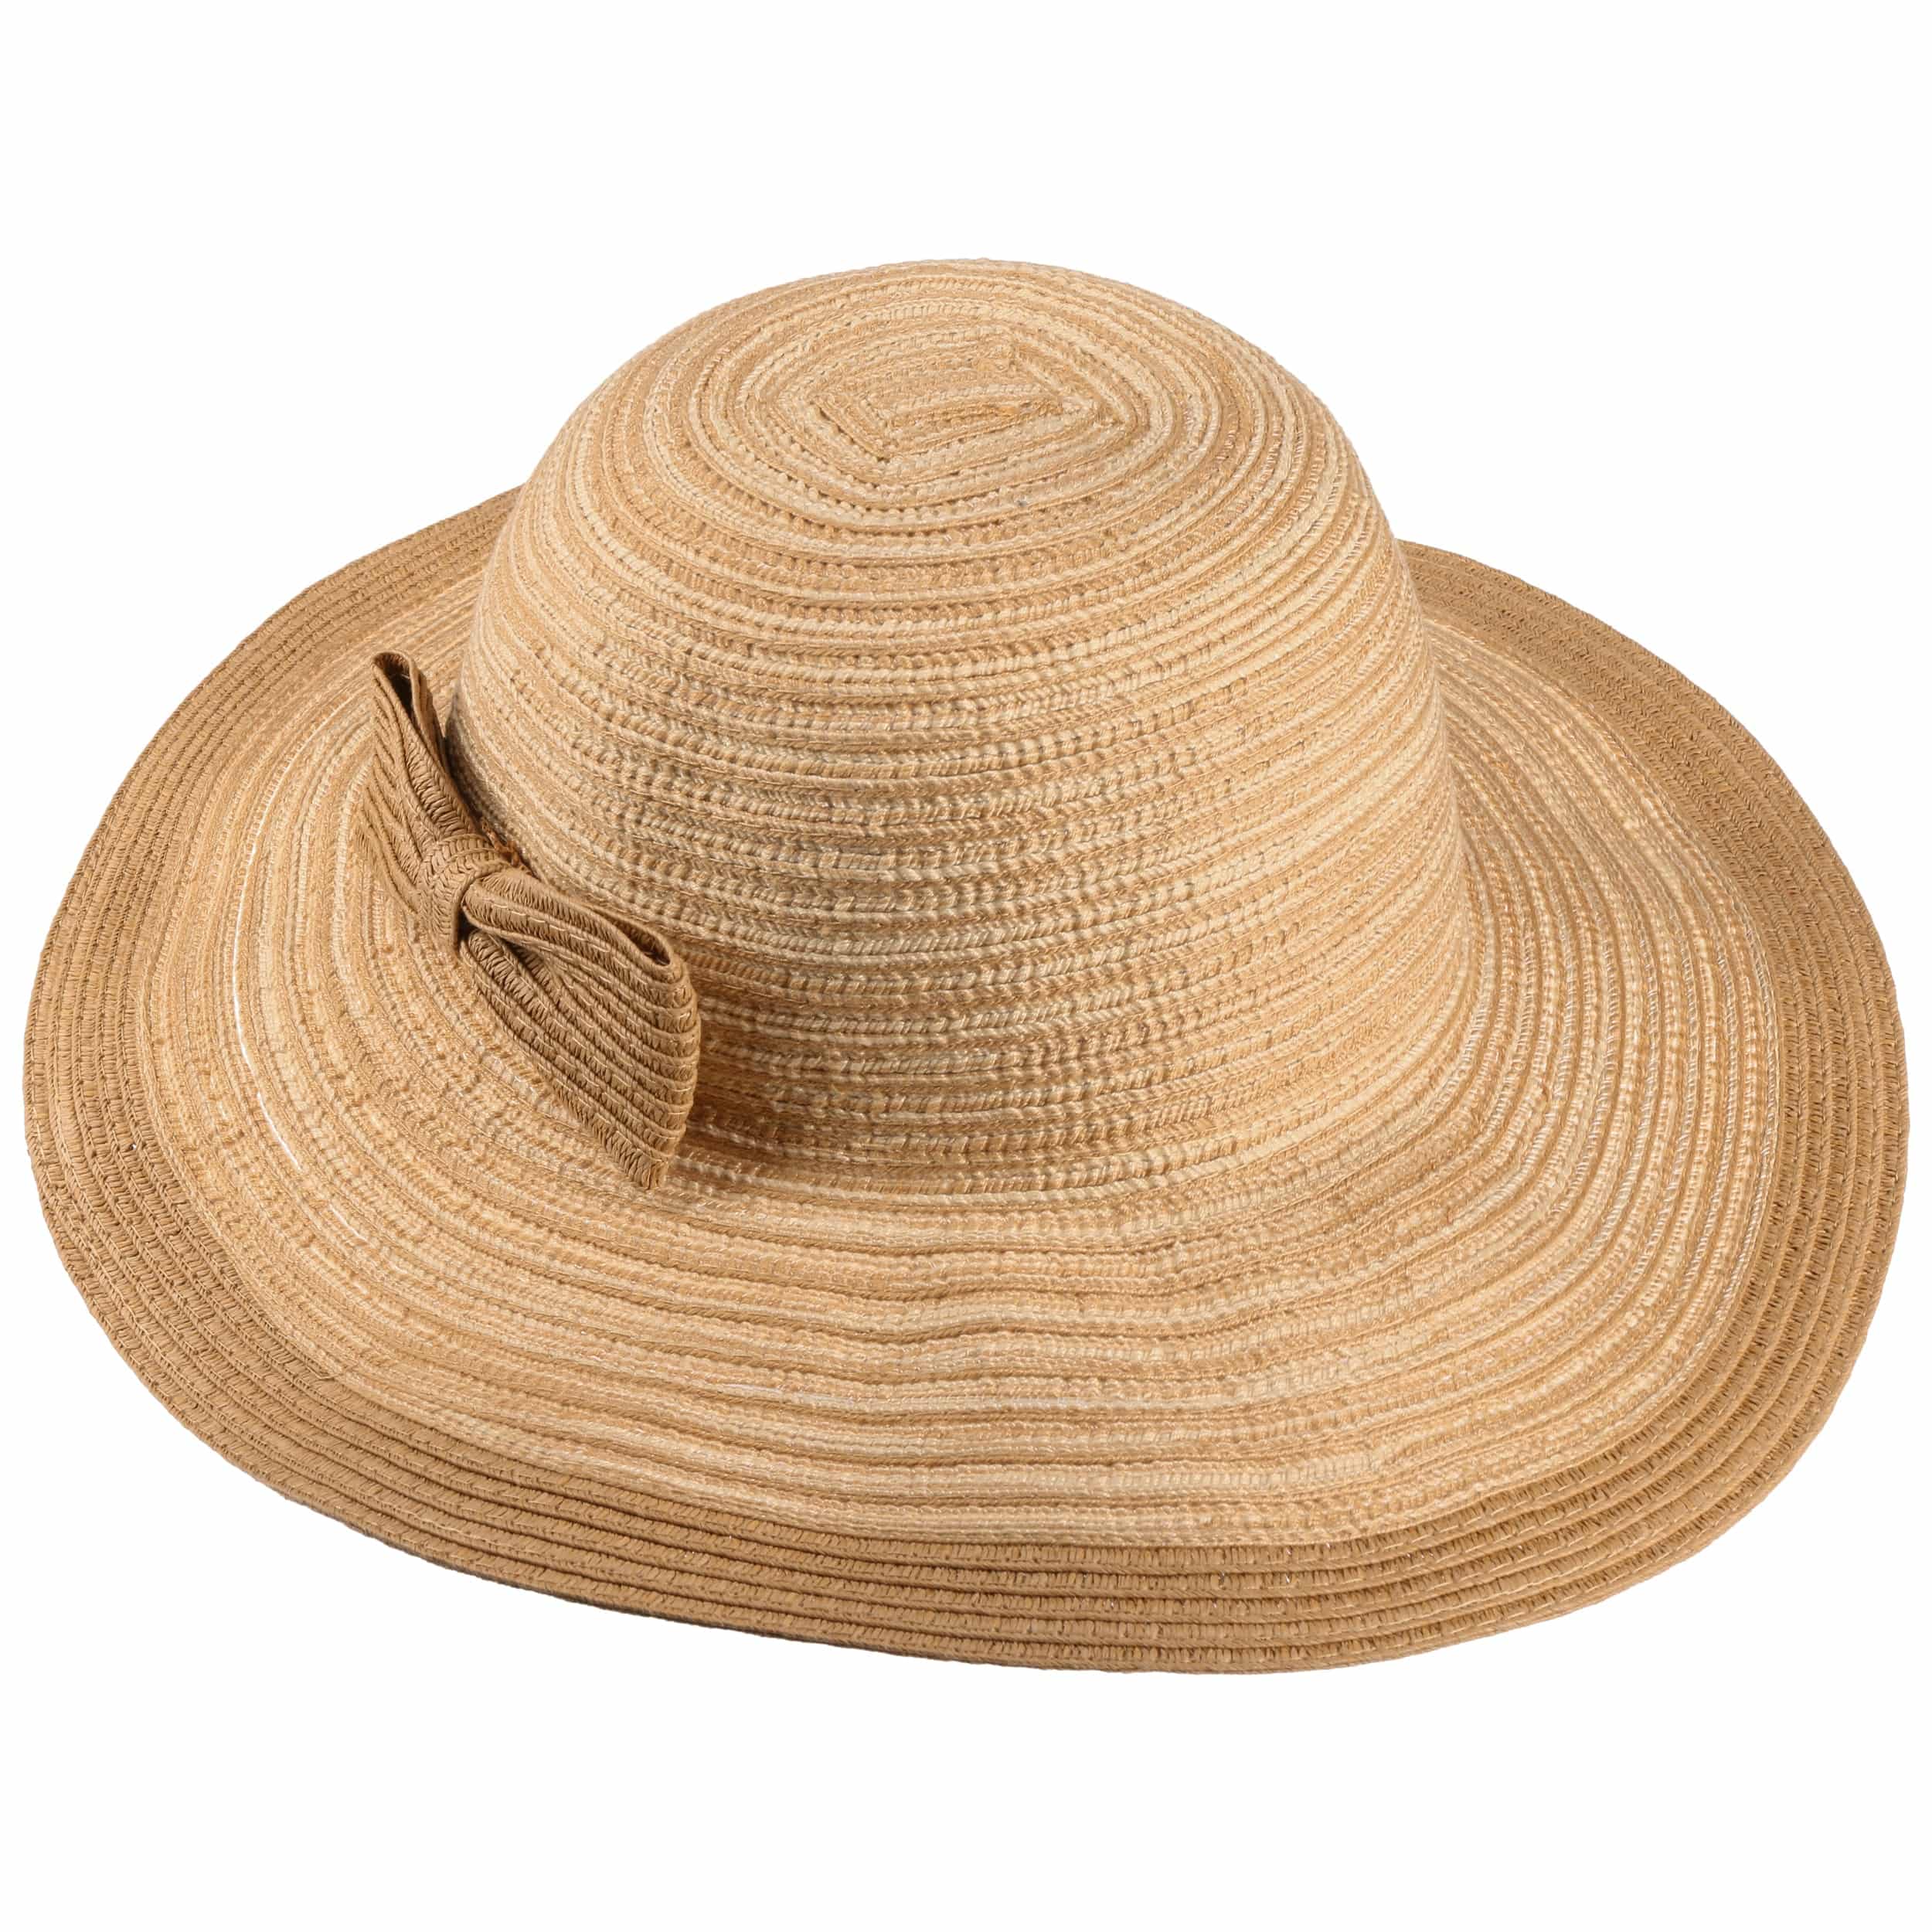 Lipodo Sombrero de ala Ancha Amina Stripes Mujer Verano Playa Sol Primavera/Verano